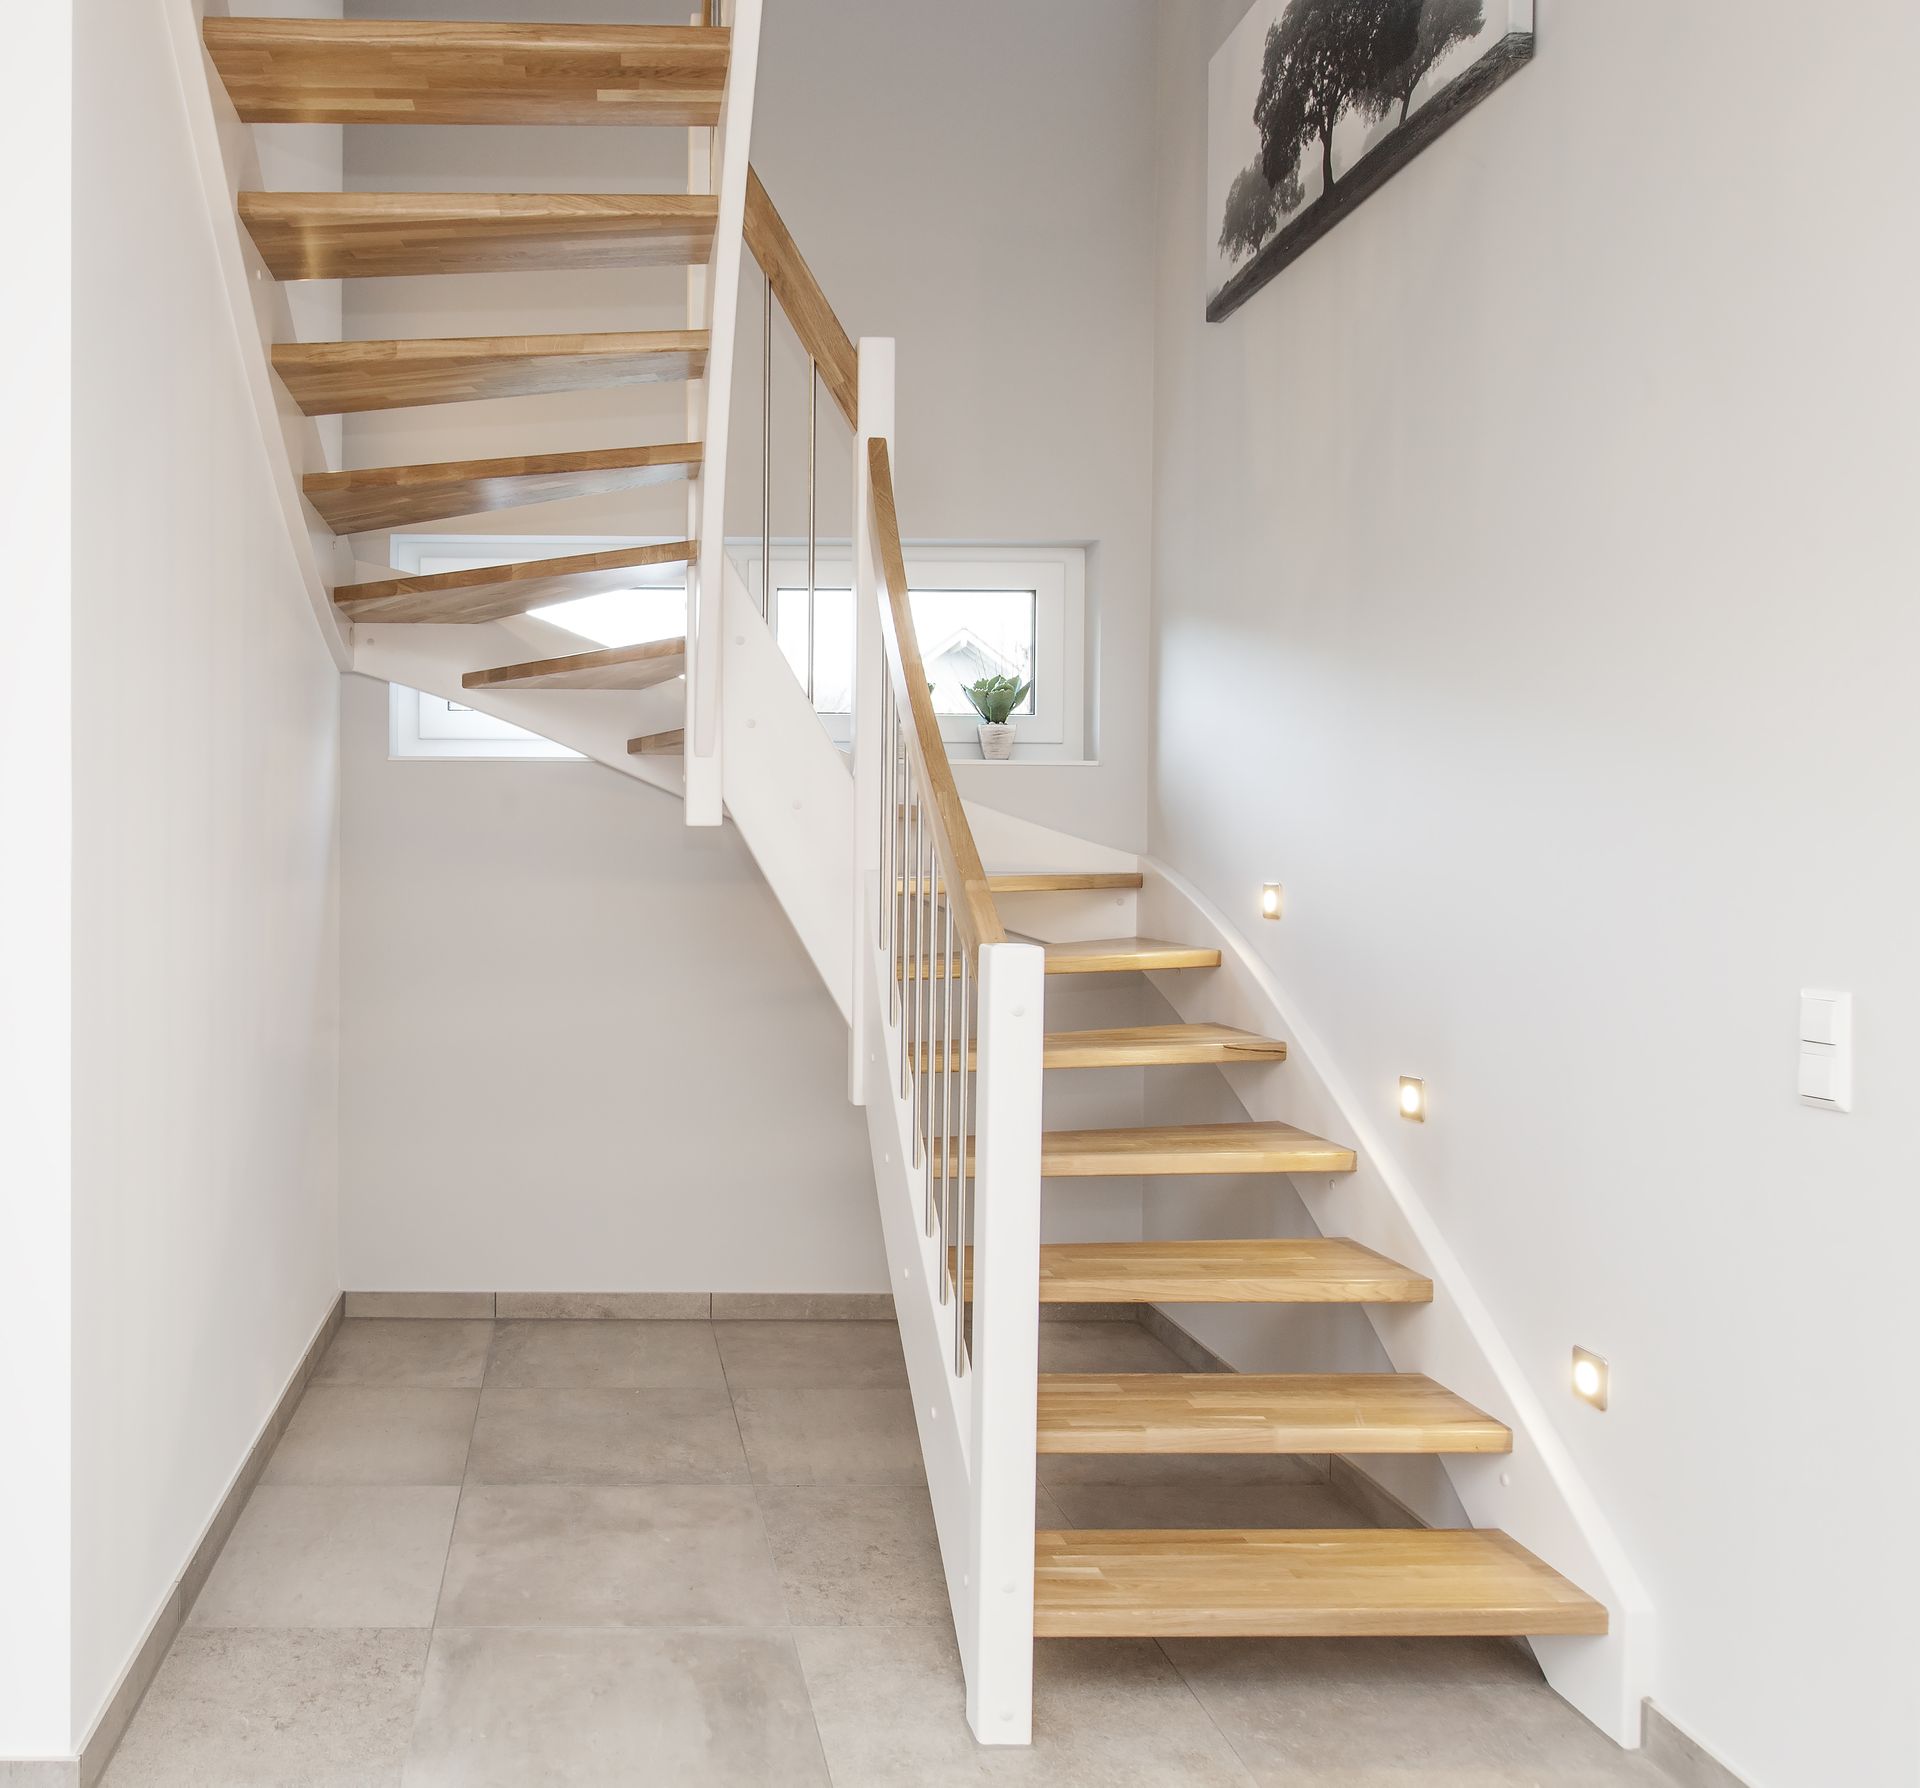 Escaliers de bois en colimaçon